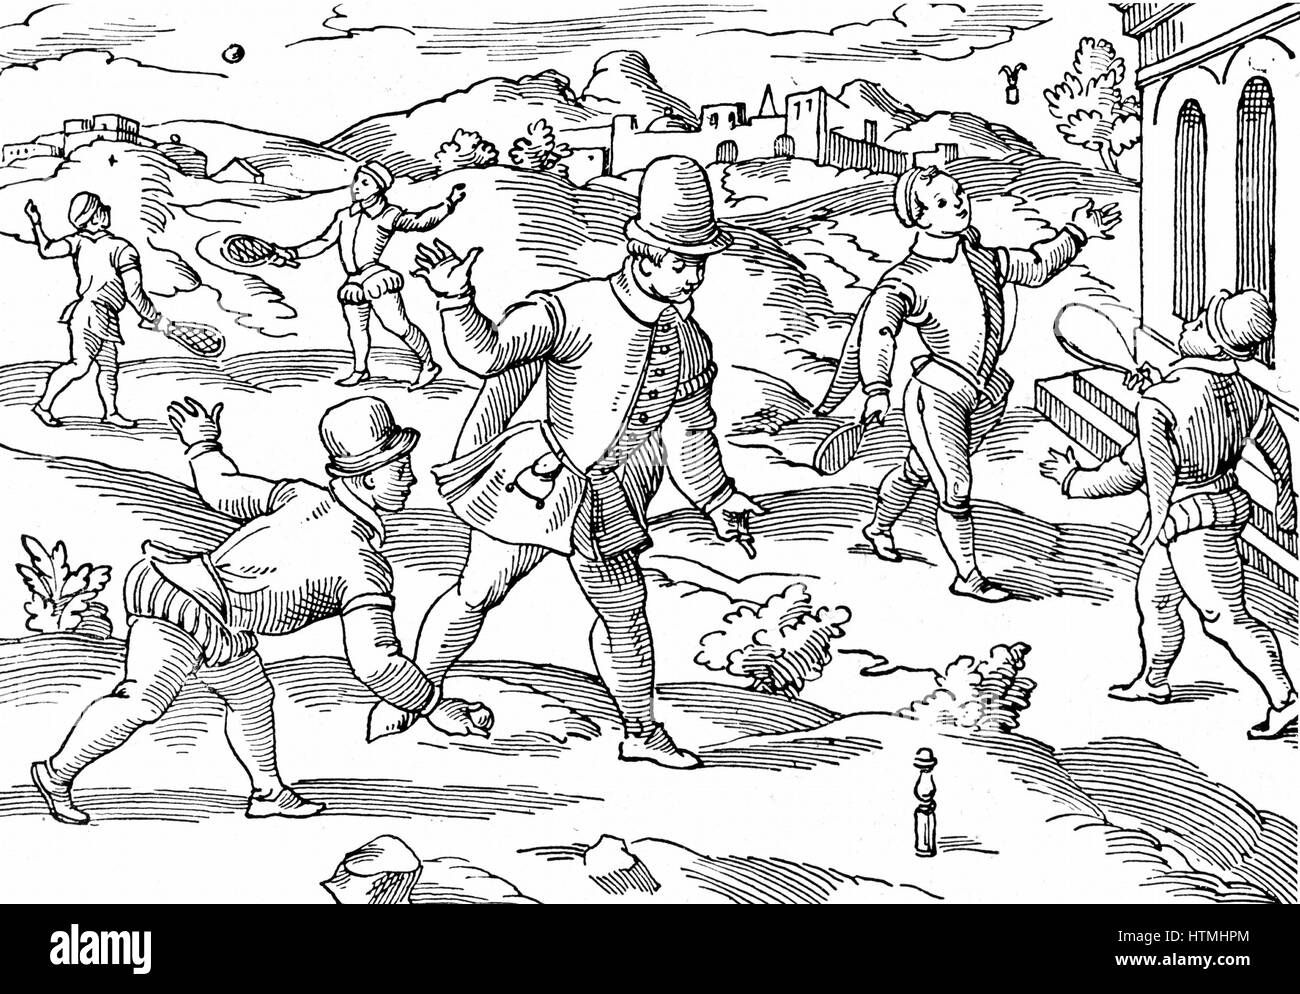 Kinderspiele im 16. Jahrhundert: im Vordergrund spielen jungen eine Form von Kegeln, auf richtige Federball, links Hintergrund mit besaiteten Schläger Ball spielen. Holzschnitt Stockfoto